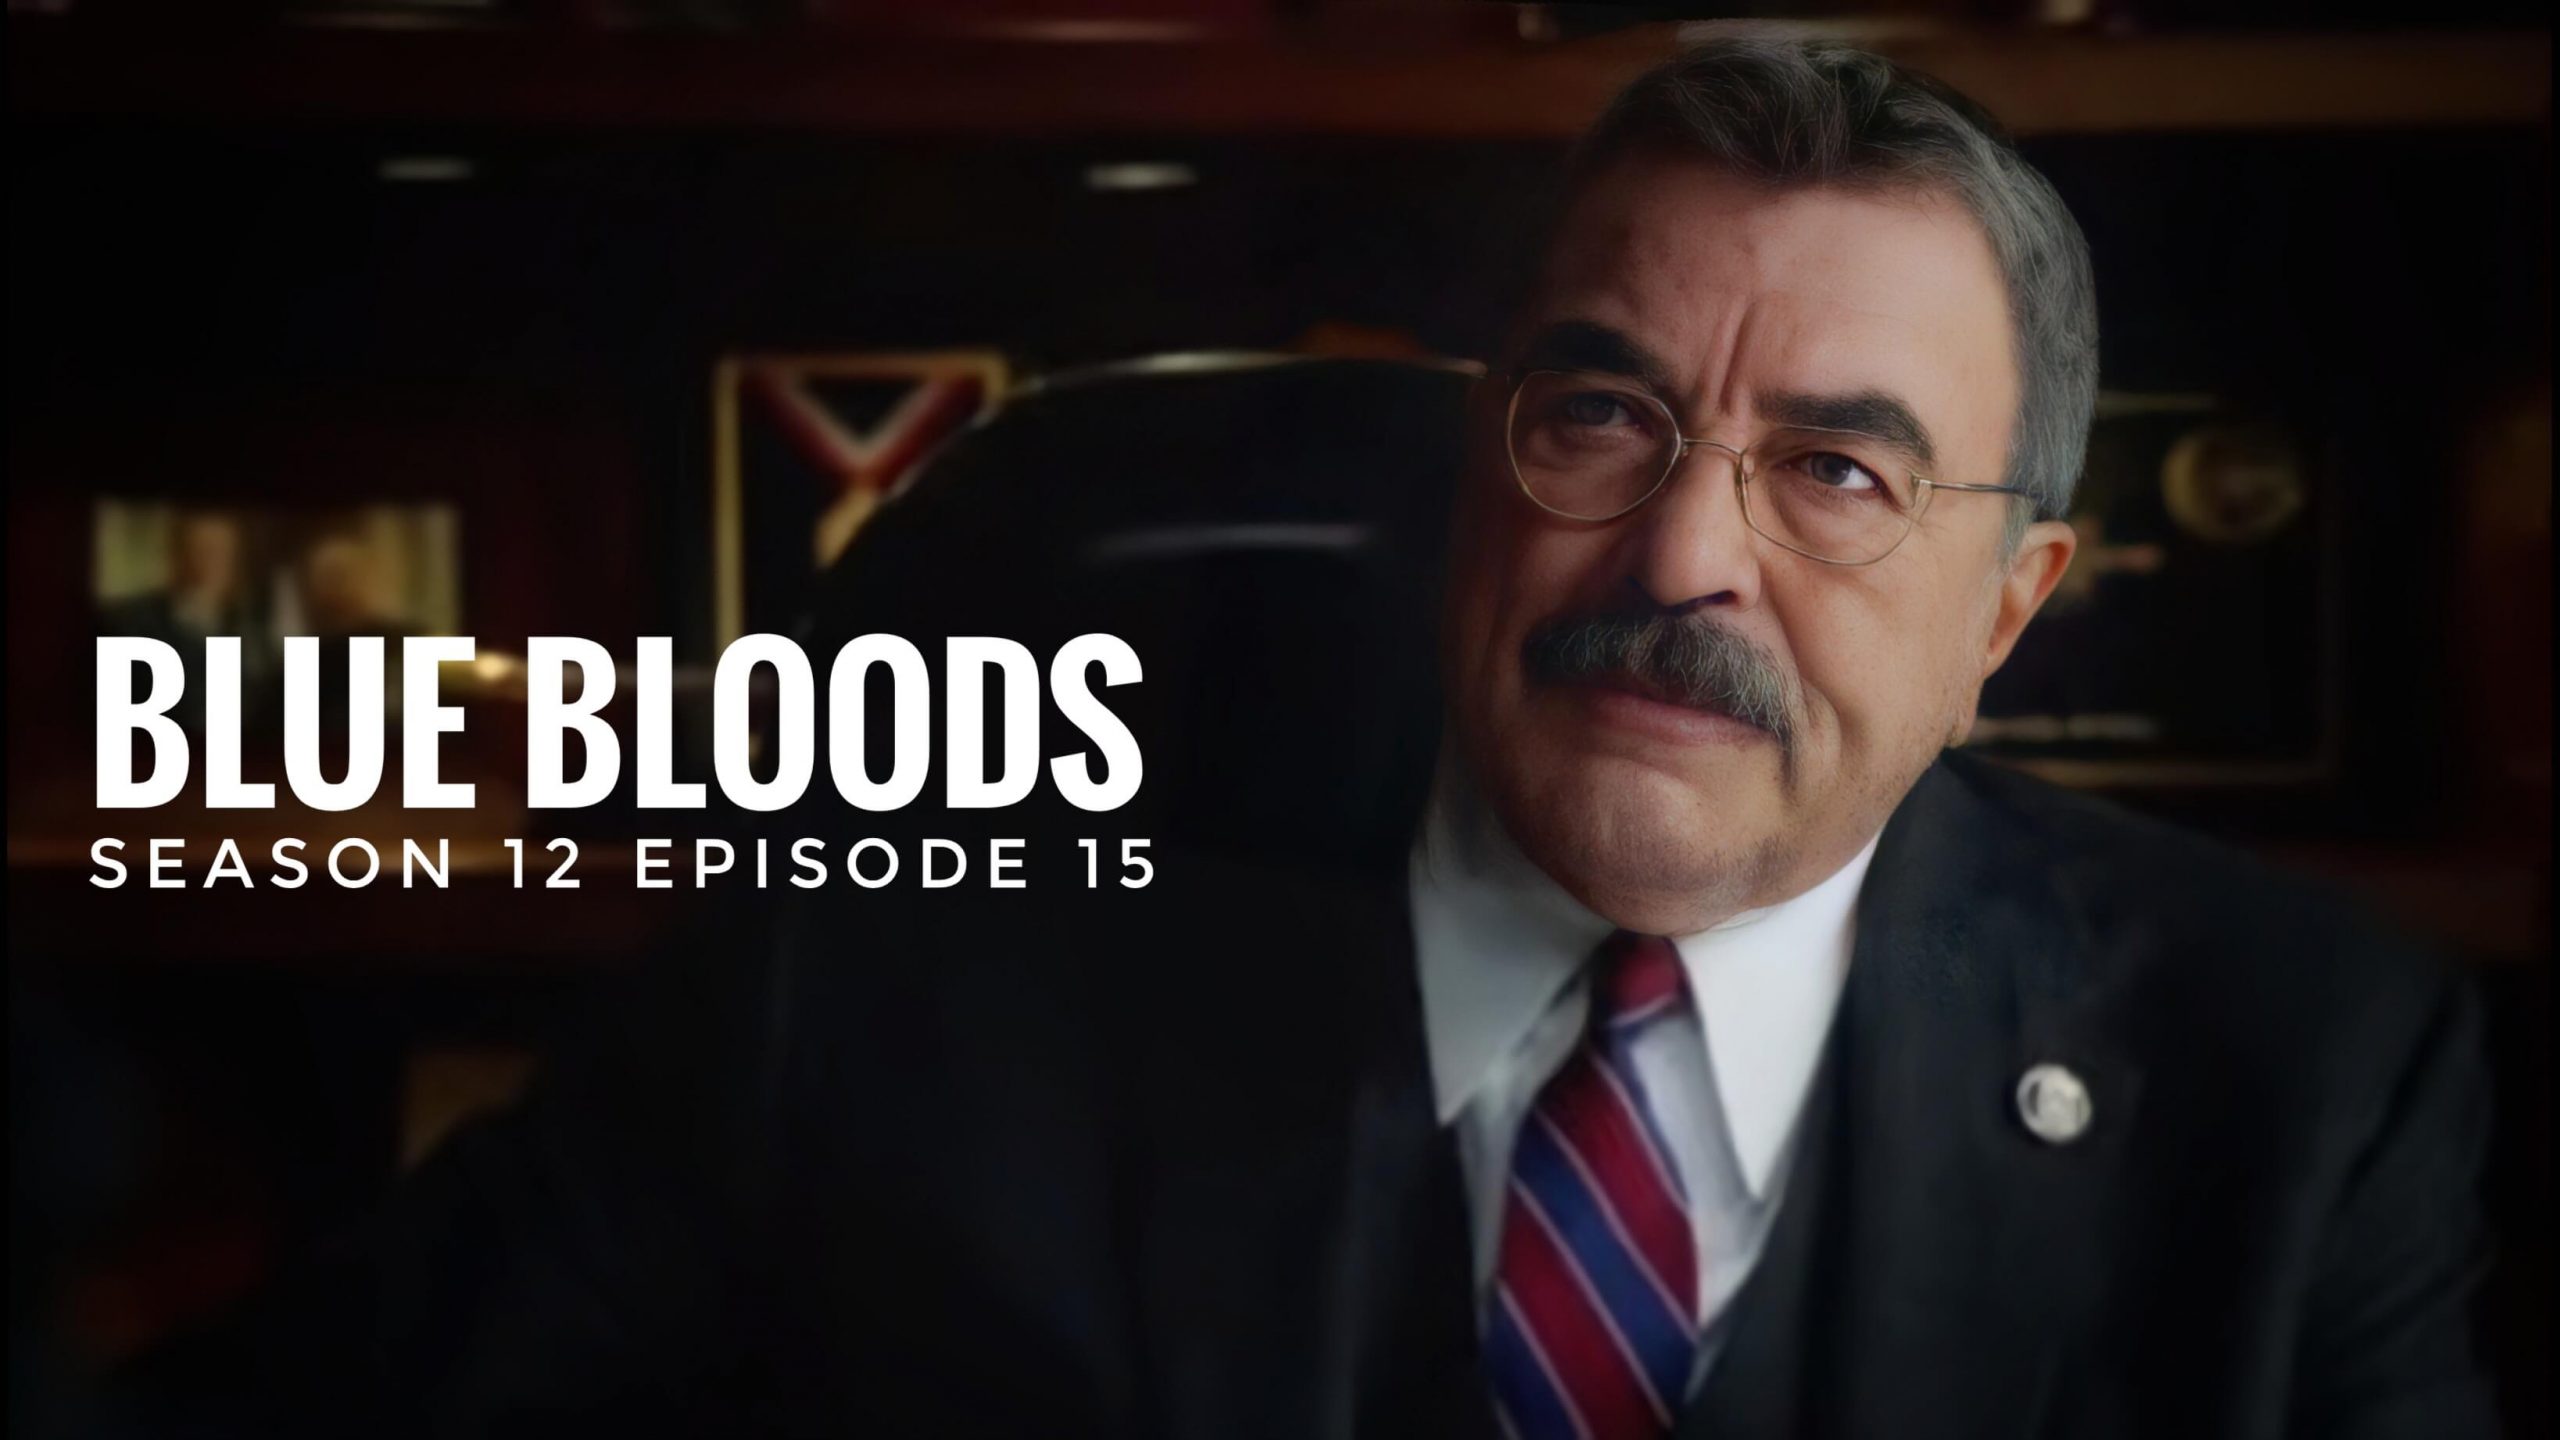 Blue Bloods season 12 episode 15 release date